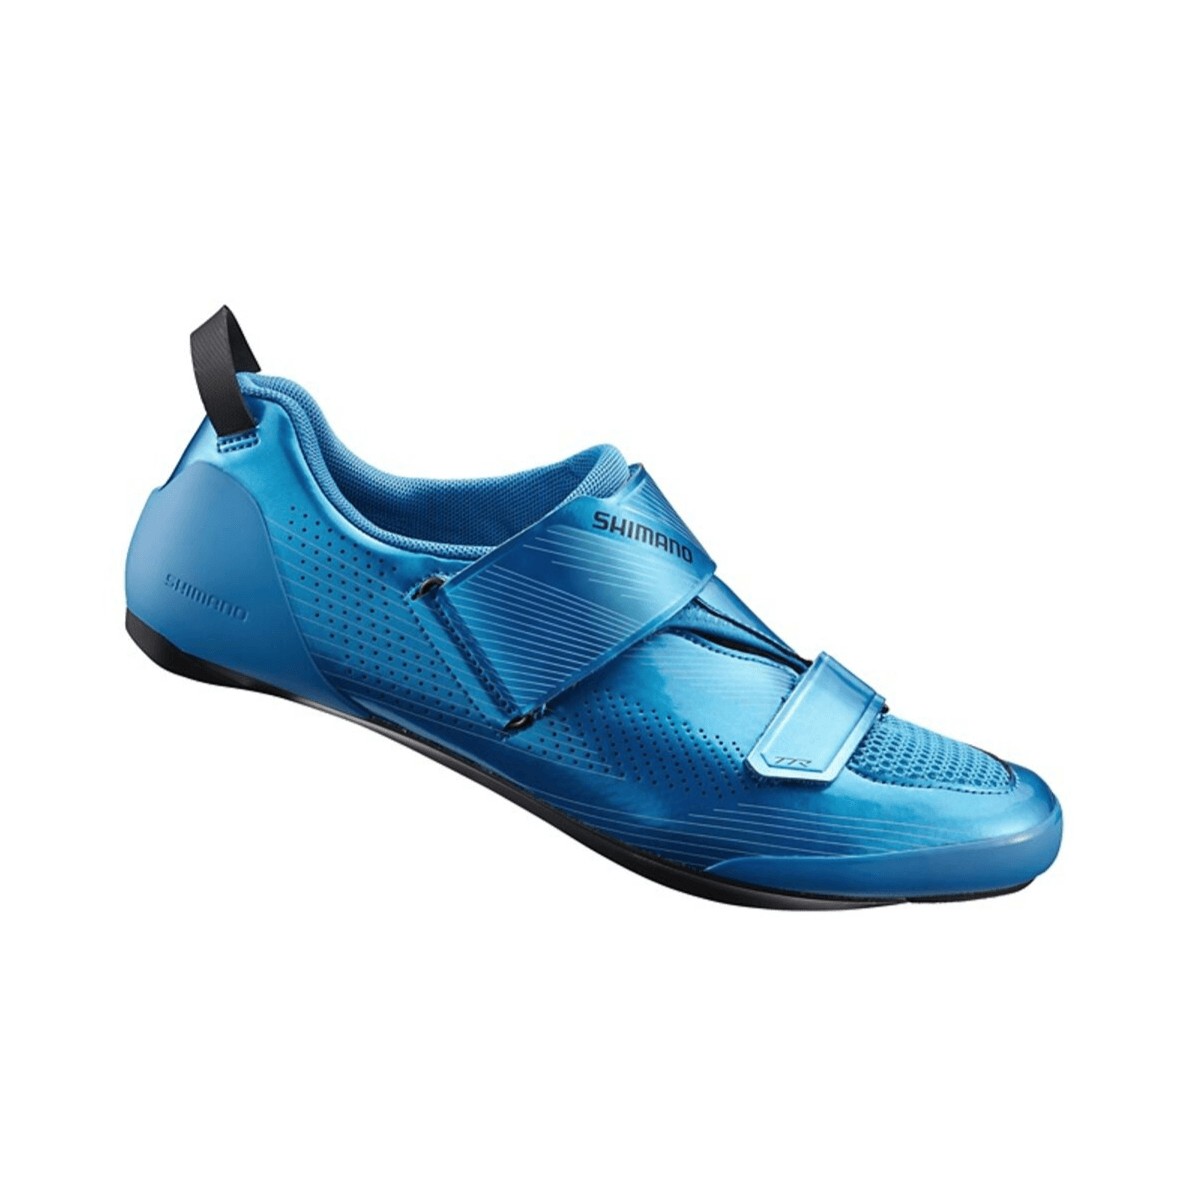 Shimano TR9 Triathlonschuhe blau, Größe 46,5 - EUR